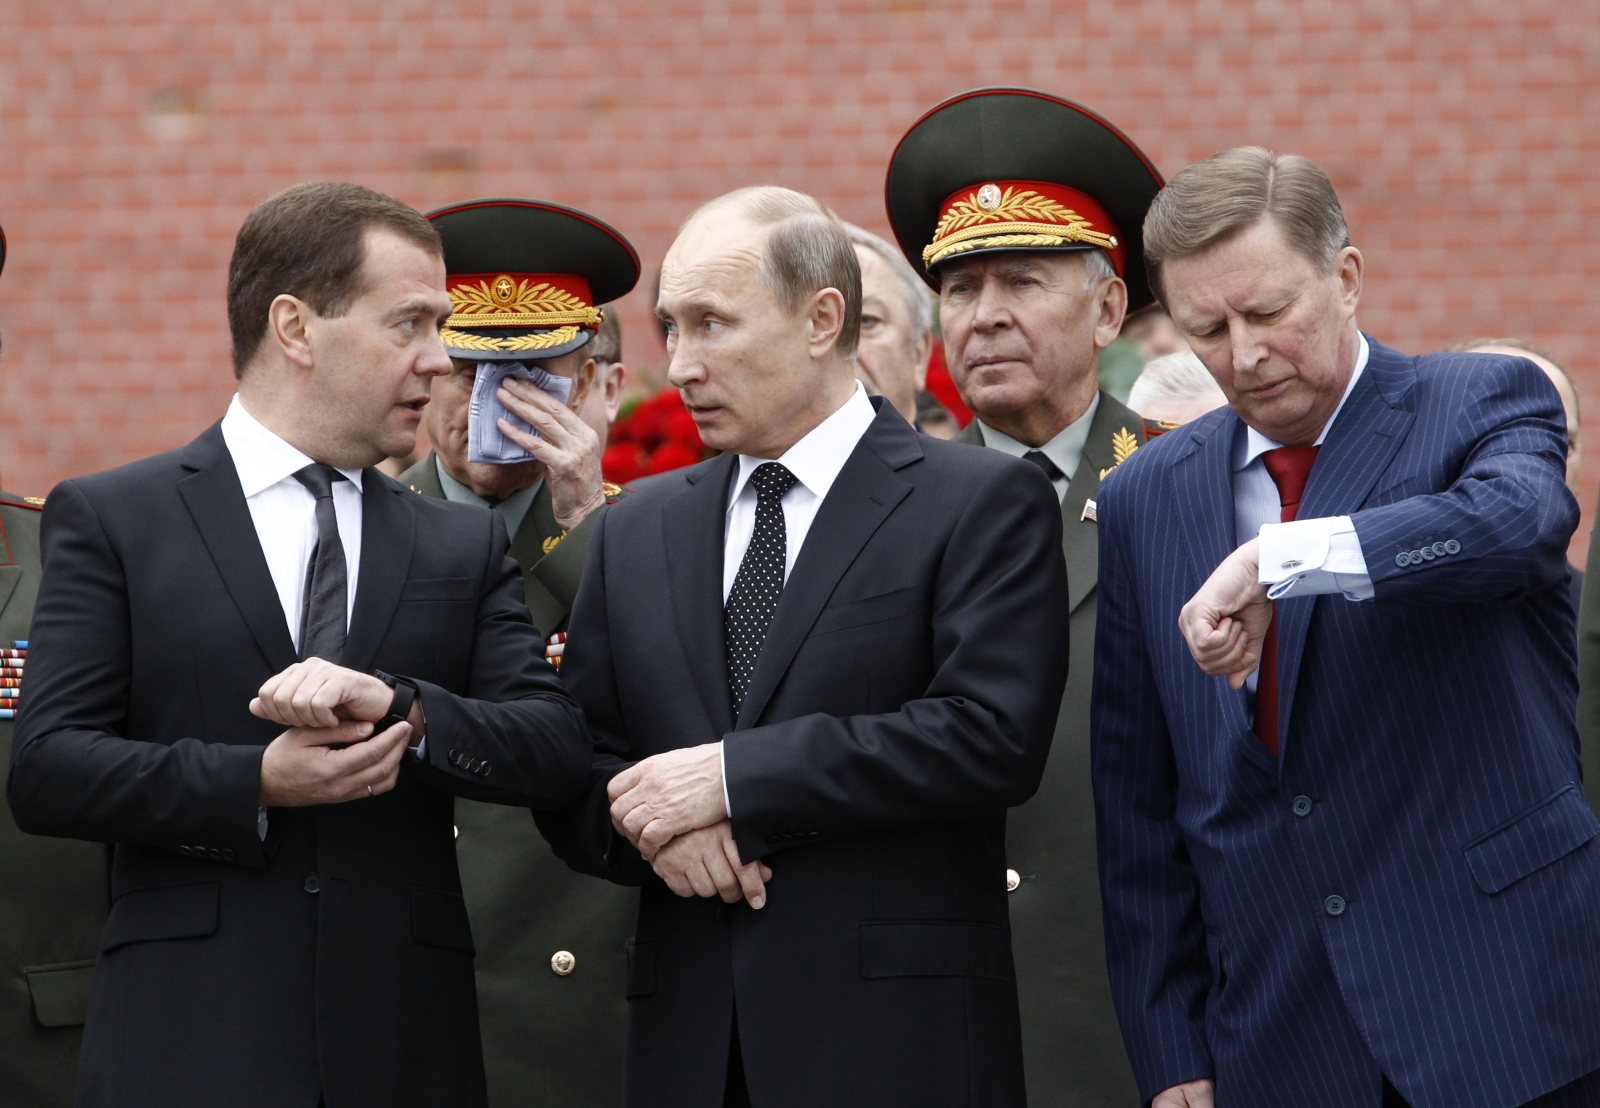 Fra venstre mot høyre: Dmitry Medvedev, Vladimir Putin og Sergey Ivanov